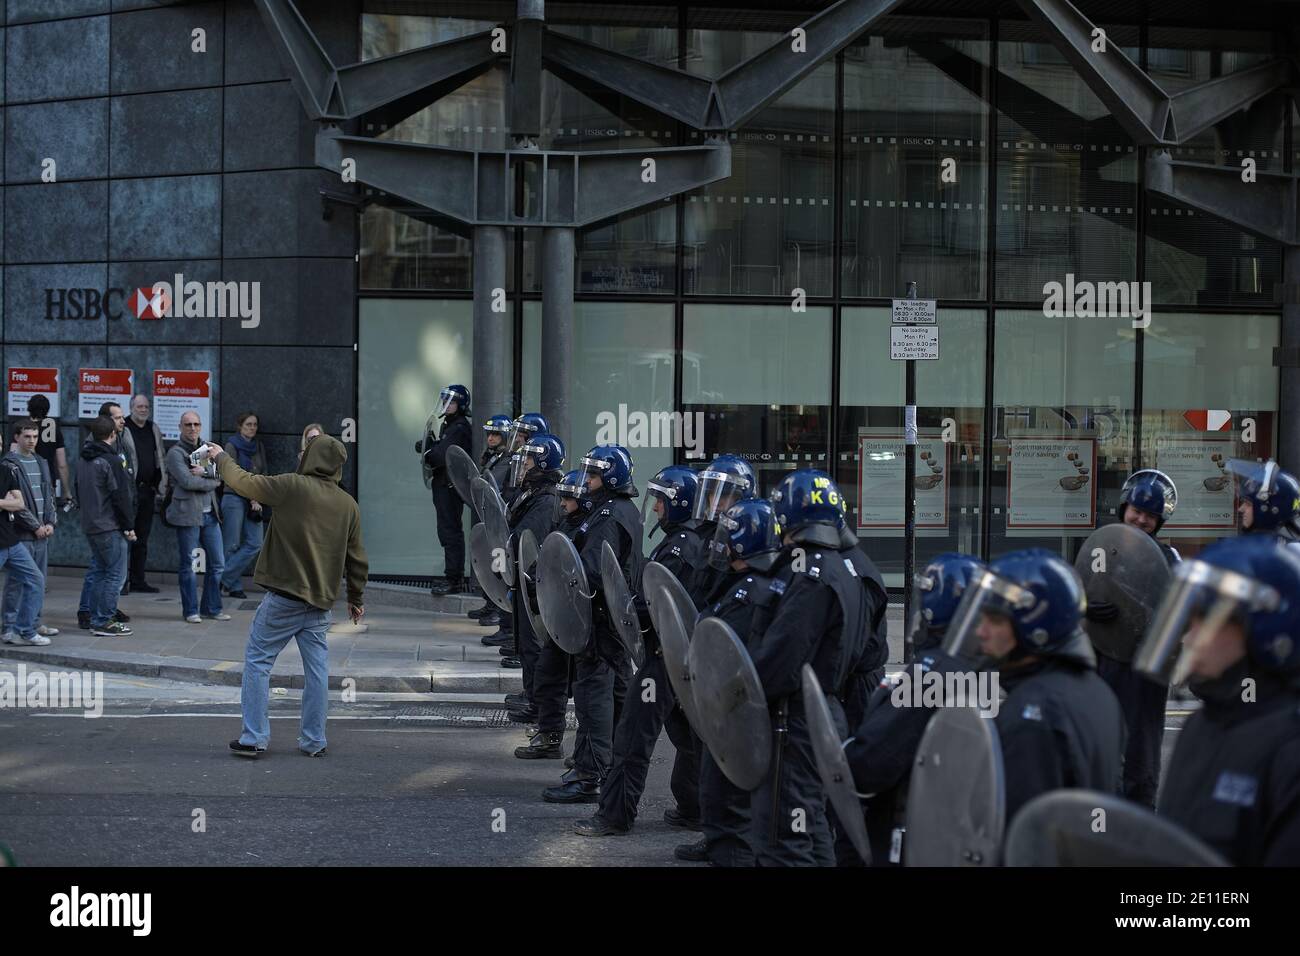 La polizia a Riot Gear blocca l'accesso a un ramo della HSBC Bank come fermare la protesta anticapitalista nella città di Londra . Foto Stock